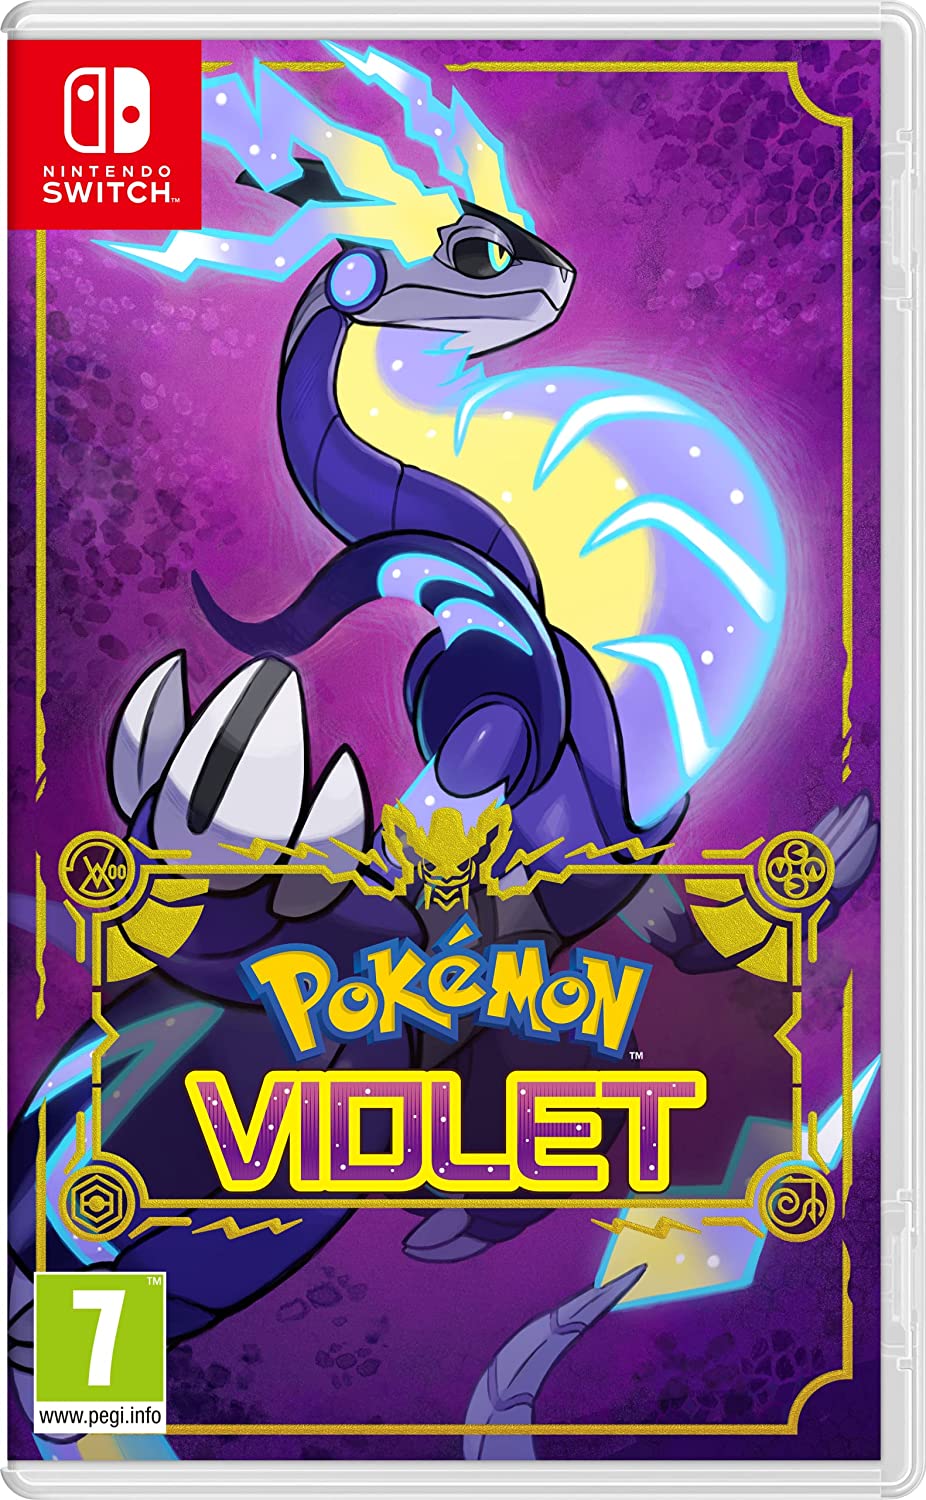 Pokémon Violet-Spielgrafik für Nintendo Switch.